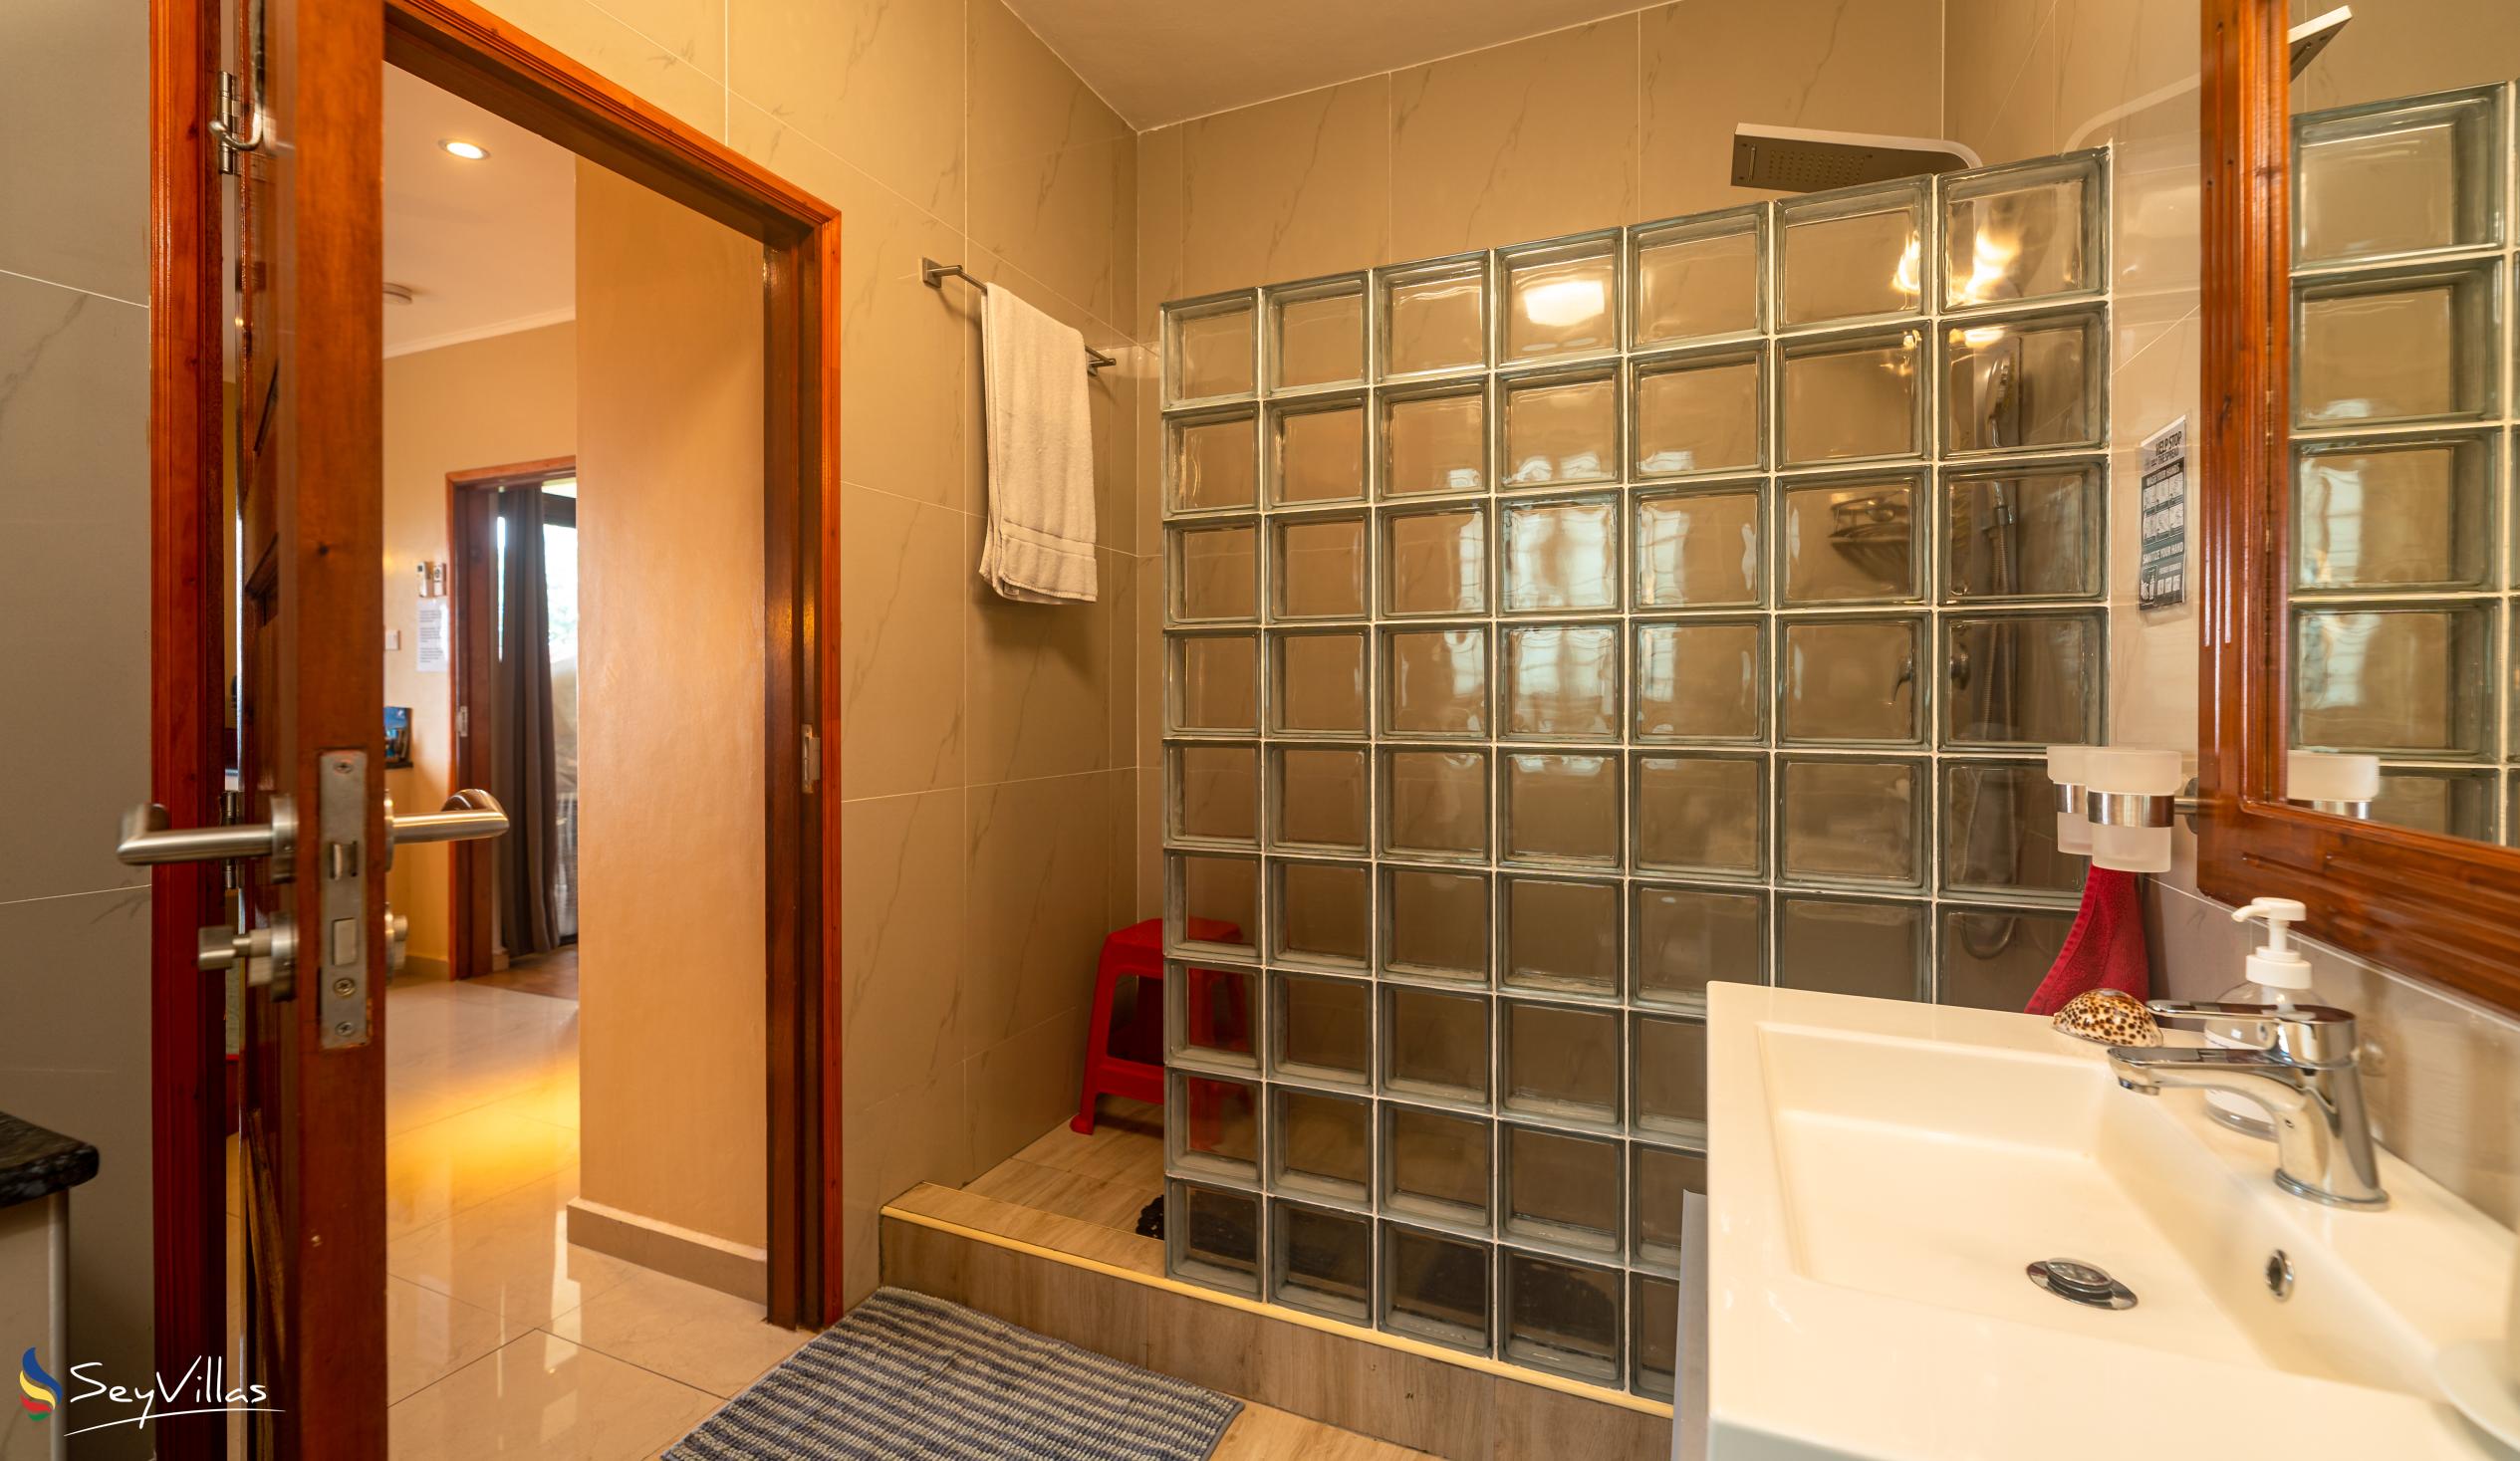 Foto 40: La Vida Selfcatering Apartments - Appartement 2 chambres - Mahé (Seychelles)